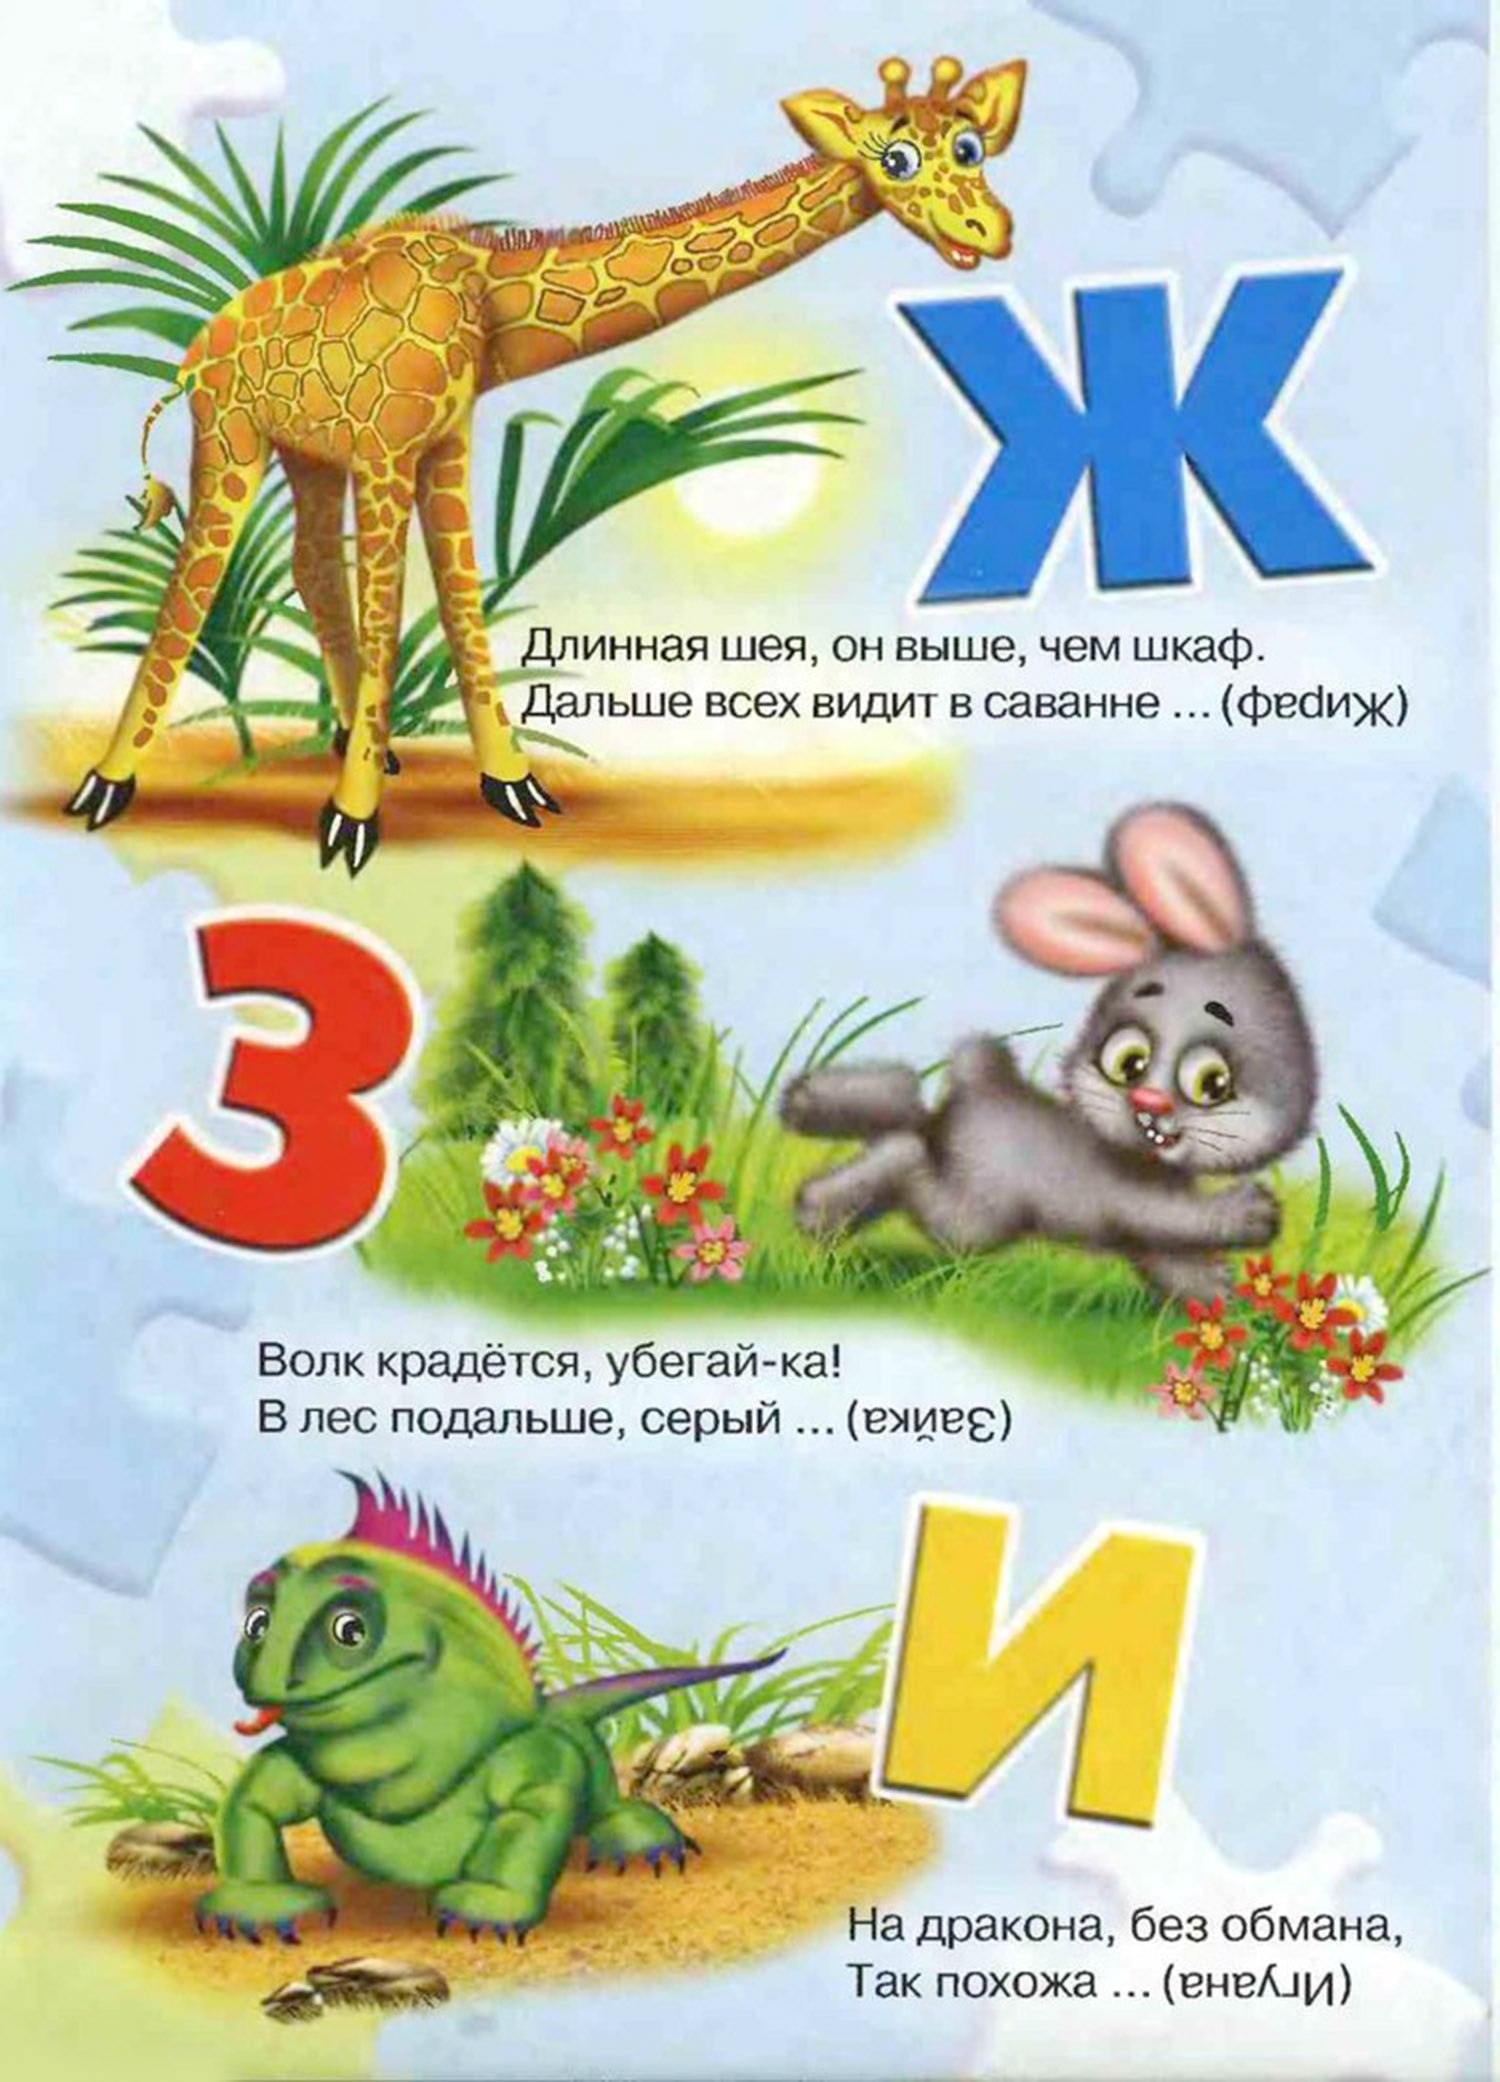 Загадки про букву И — изучаем русский алфавит